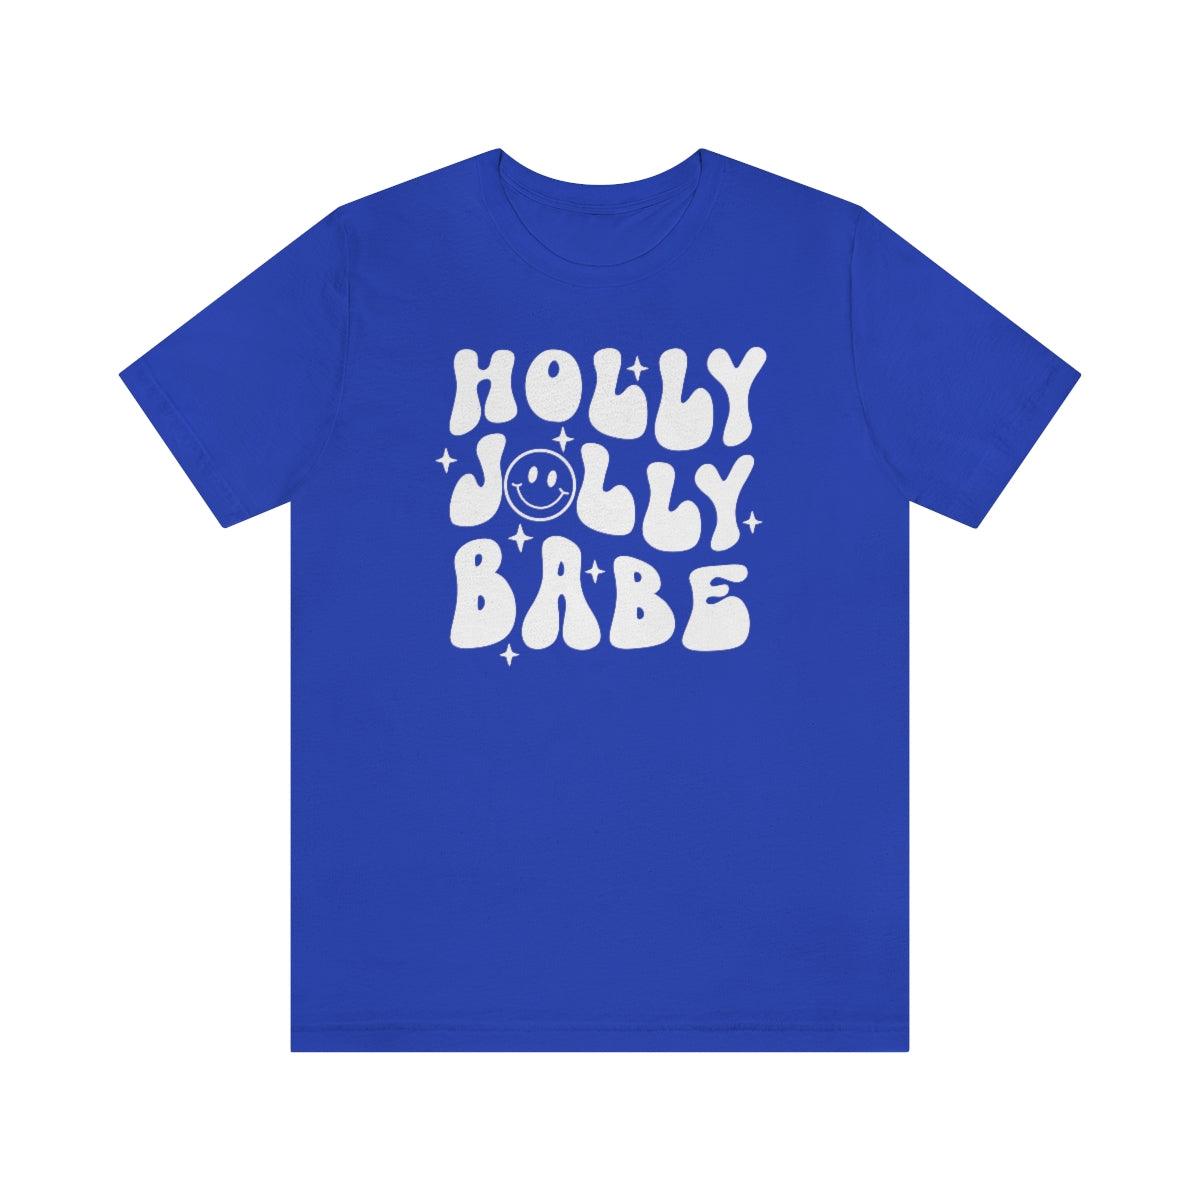 Retro Holly Jolly Babe Christmas Shirt Short Sleeve Tee